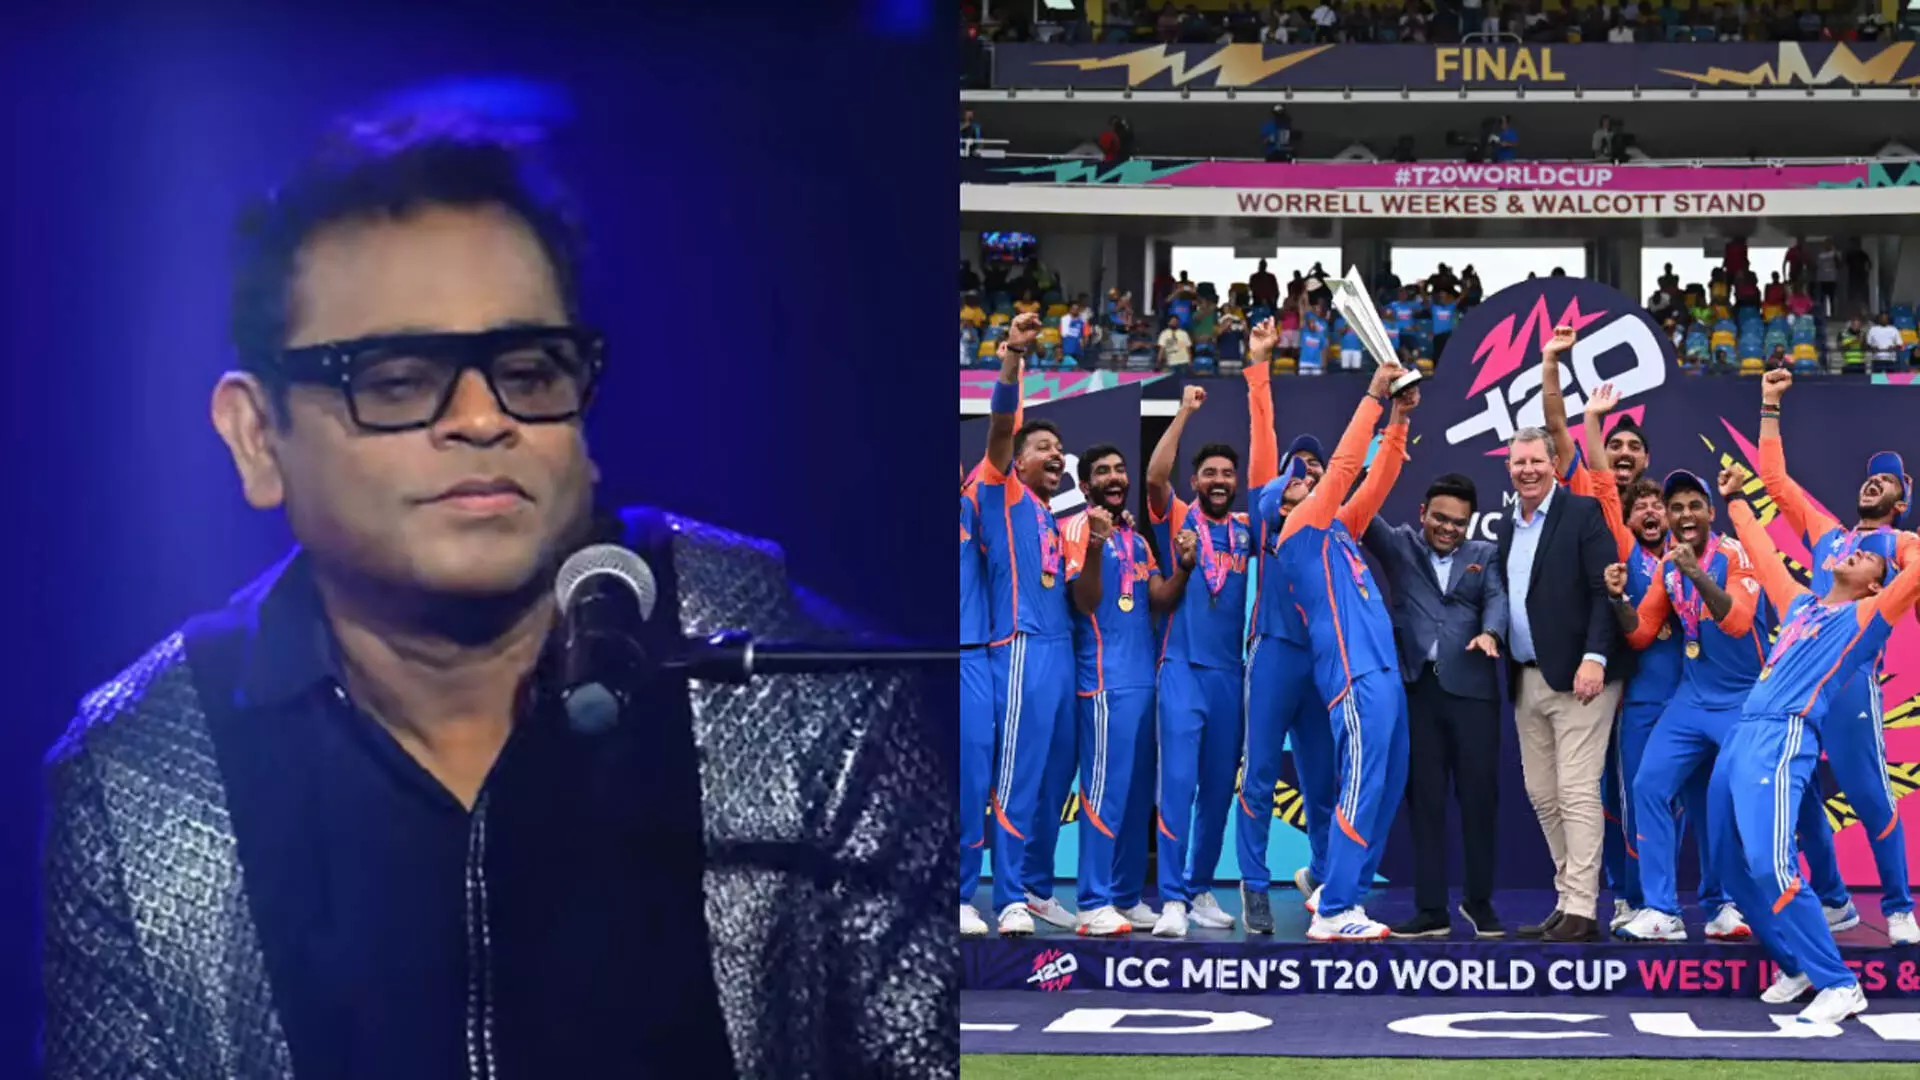 AR रहमान ने विश्व कप की जीत के बाद रोहित शर्मा एंड कंपनी को समर्पित किया गाना, VIDEO...